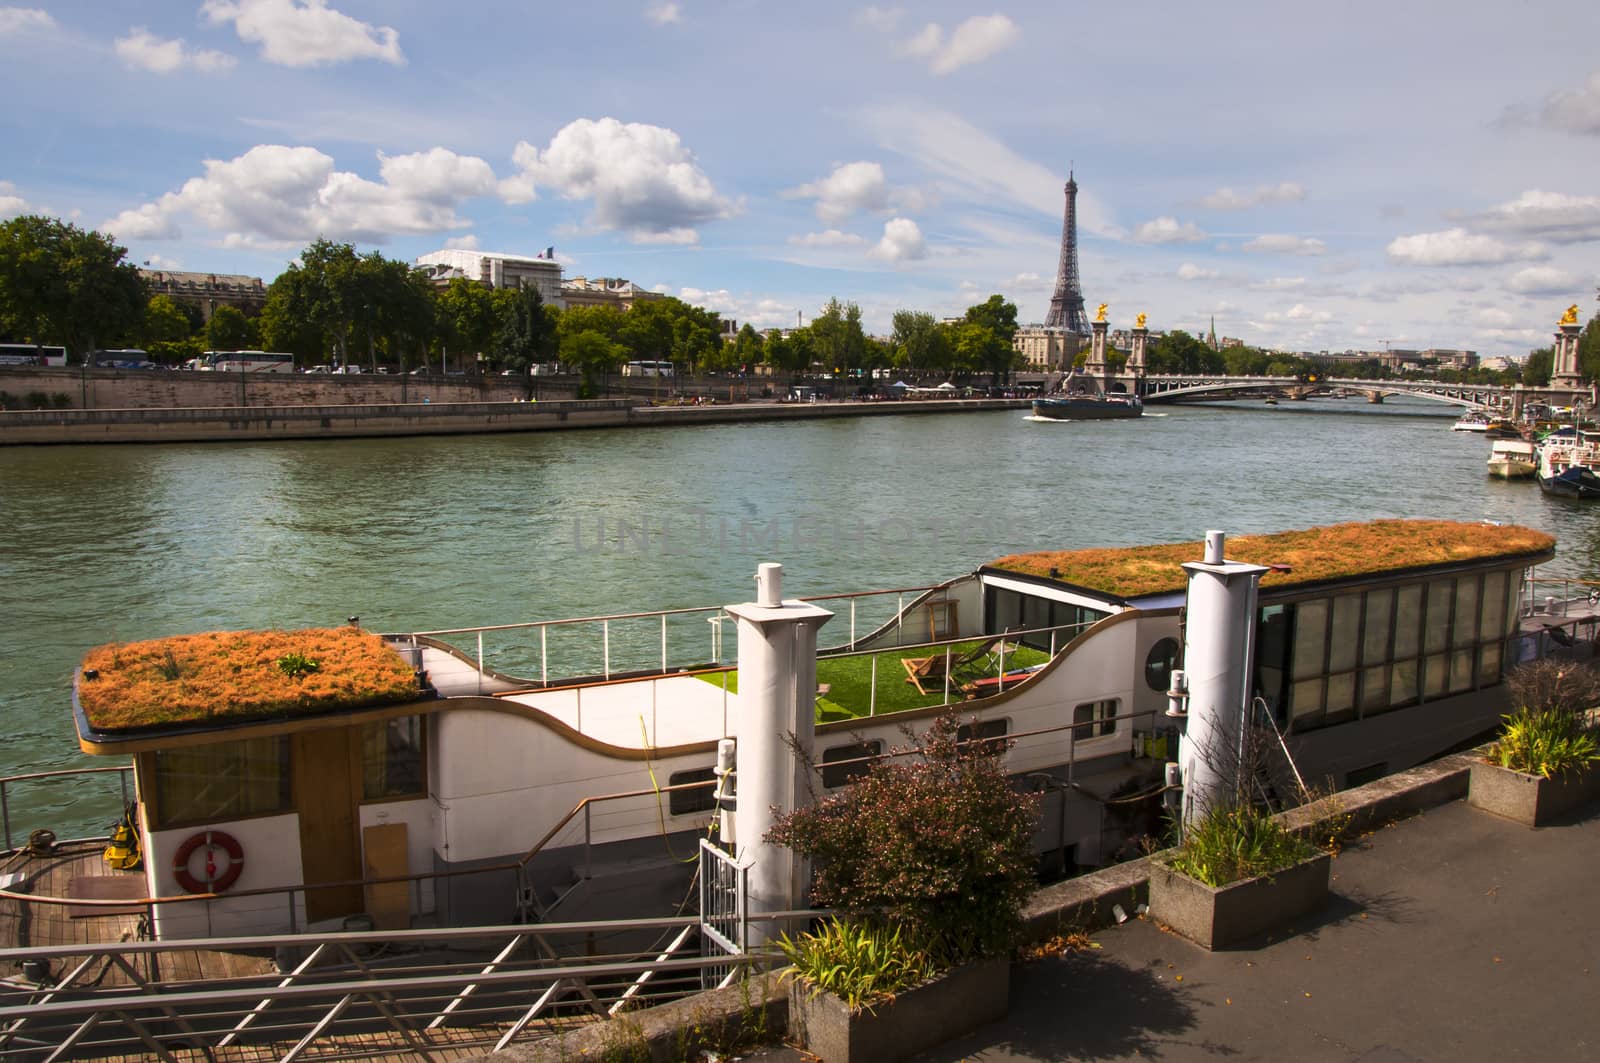 Eiffel tower in Paris on Seine river